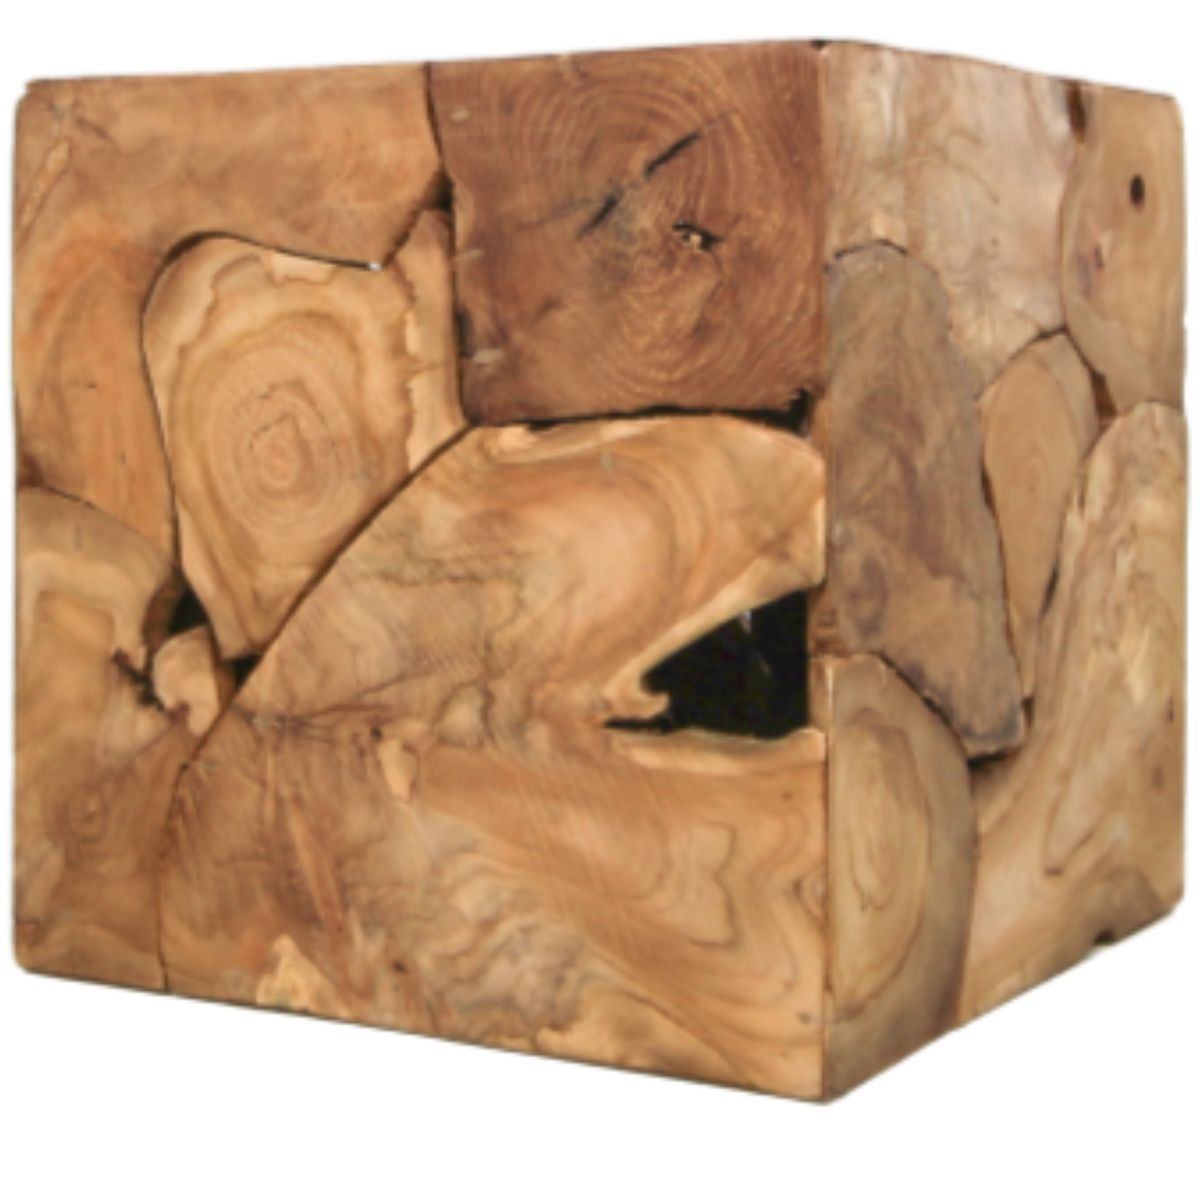 Kubus bijzettafel van Wood Selections met uniek houtpatroon en robuuste uitstraling.